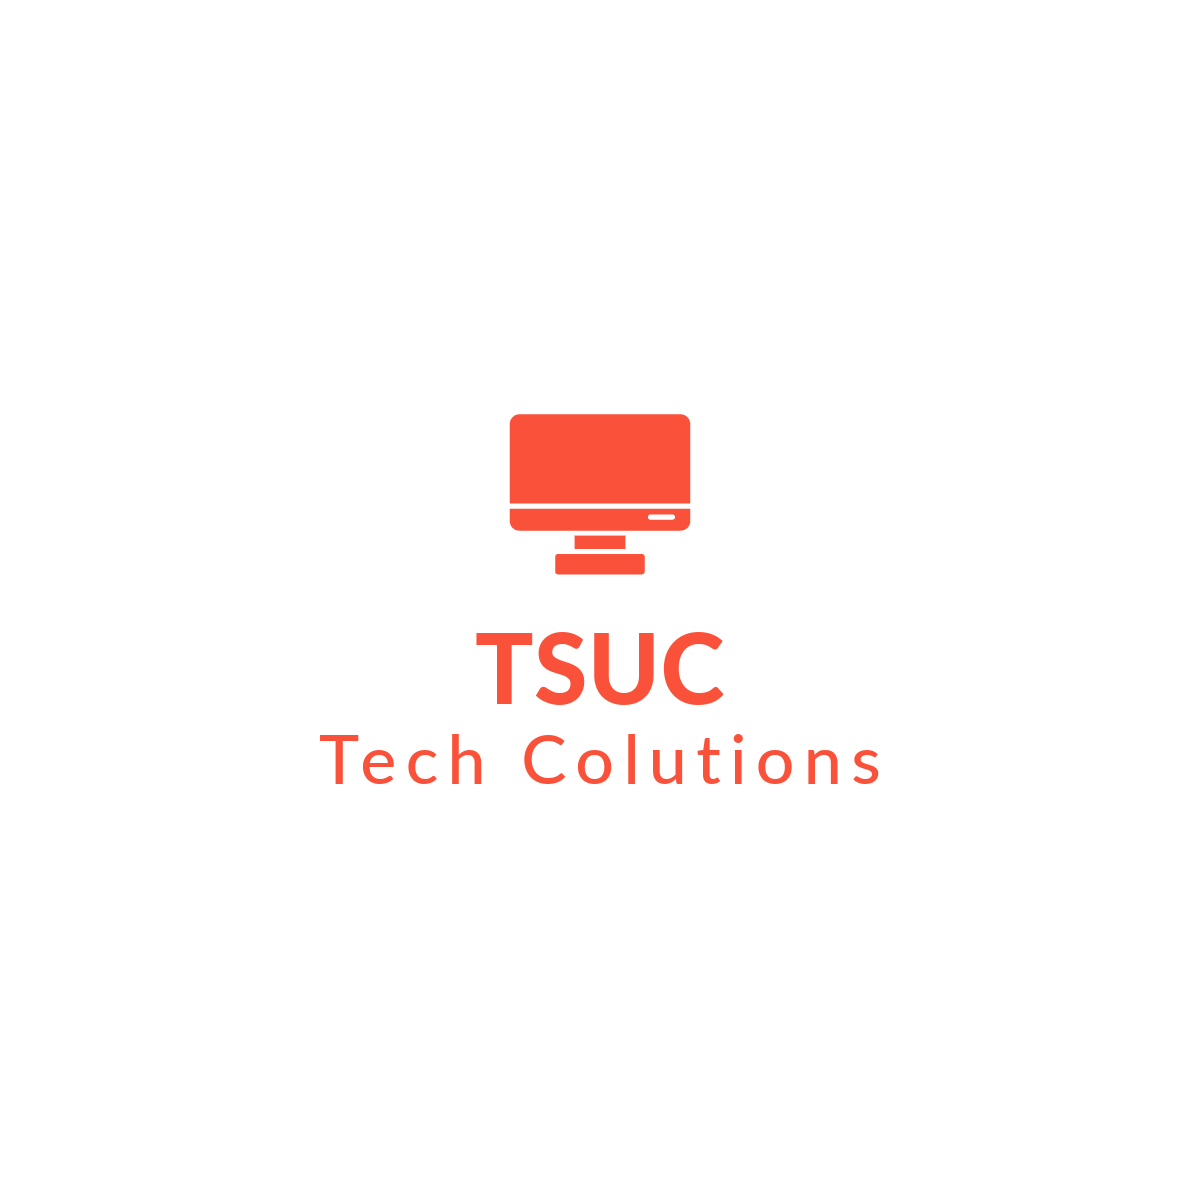 TSUC image